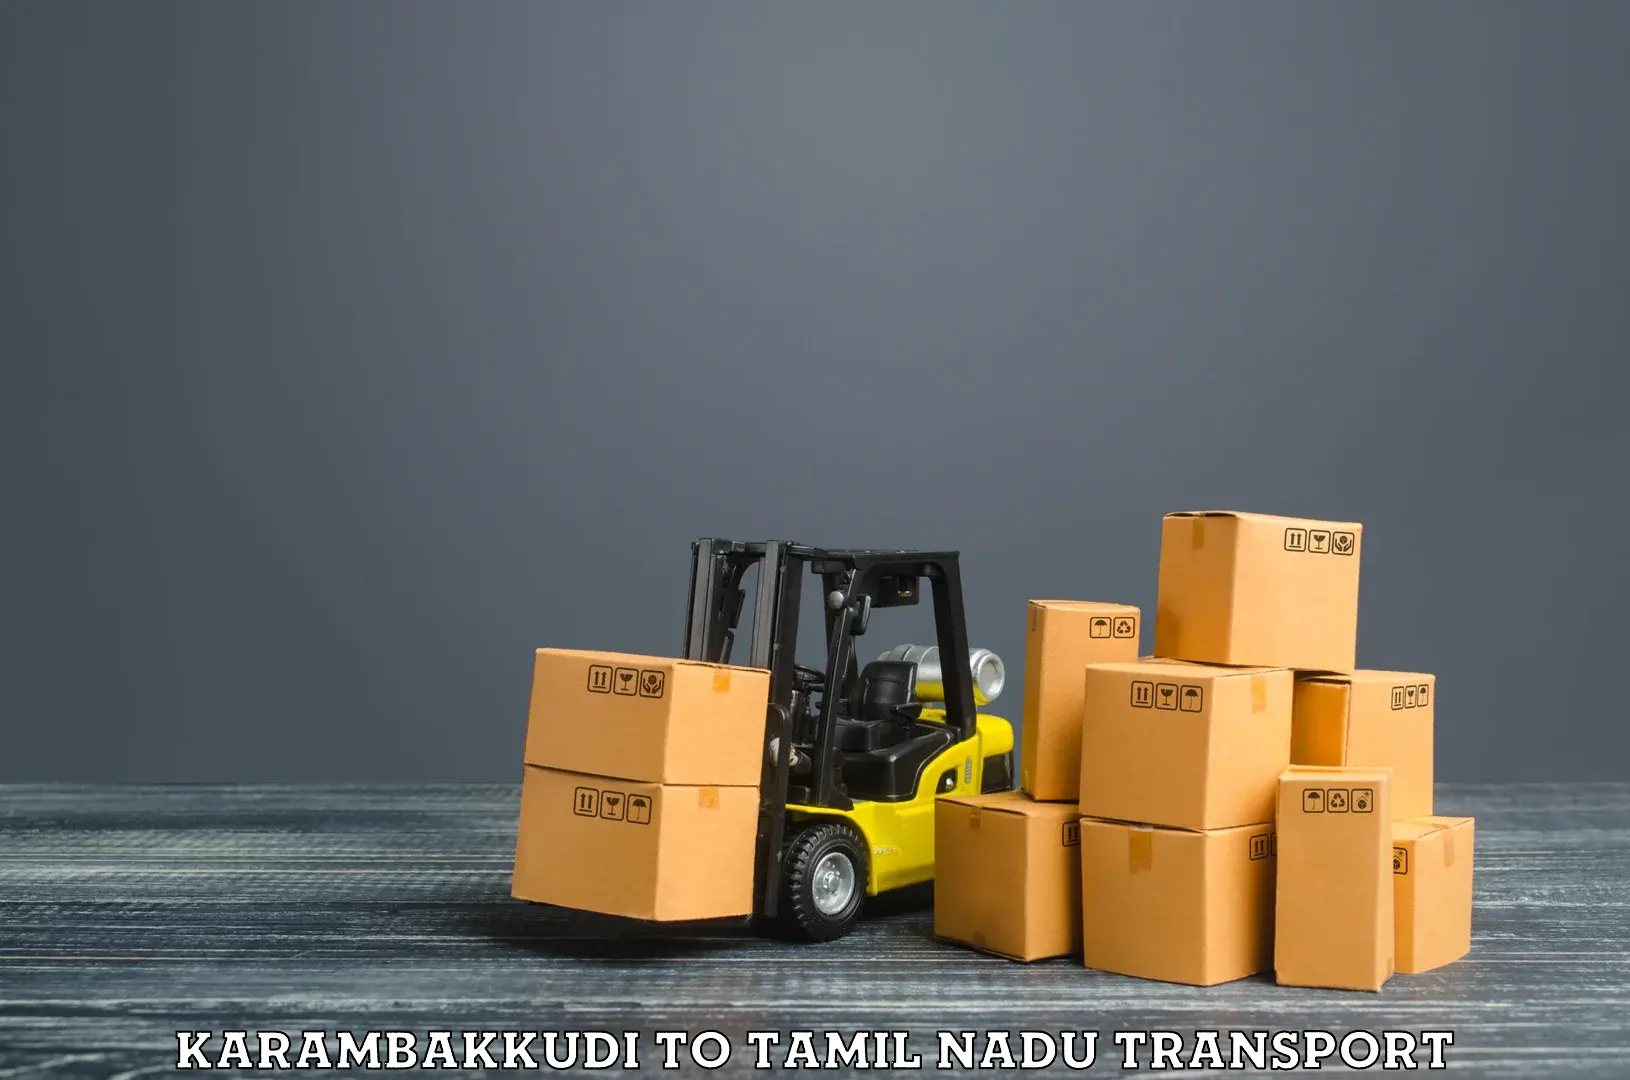 Shipping partner Karambakkudi to Tirupattur